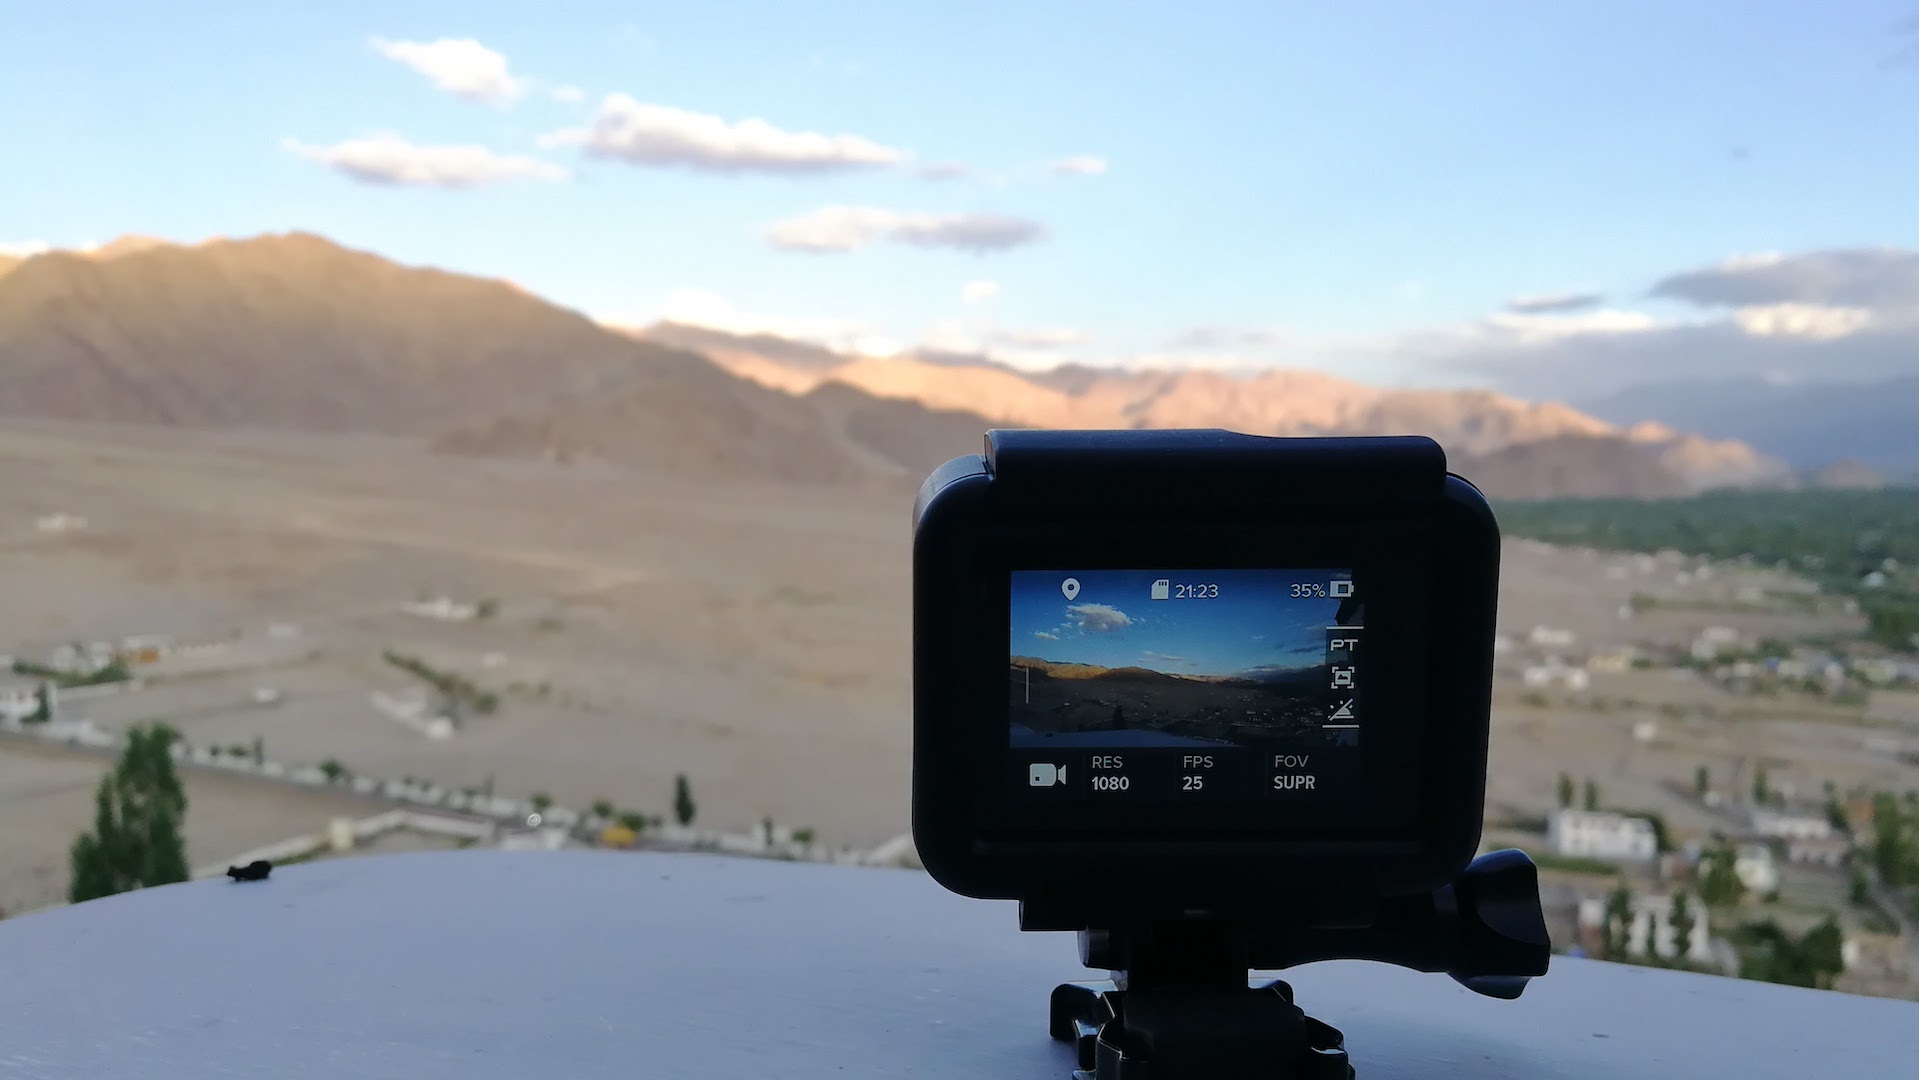 Ladakh GoPro